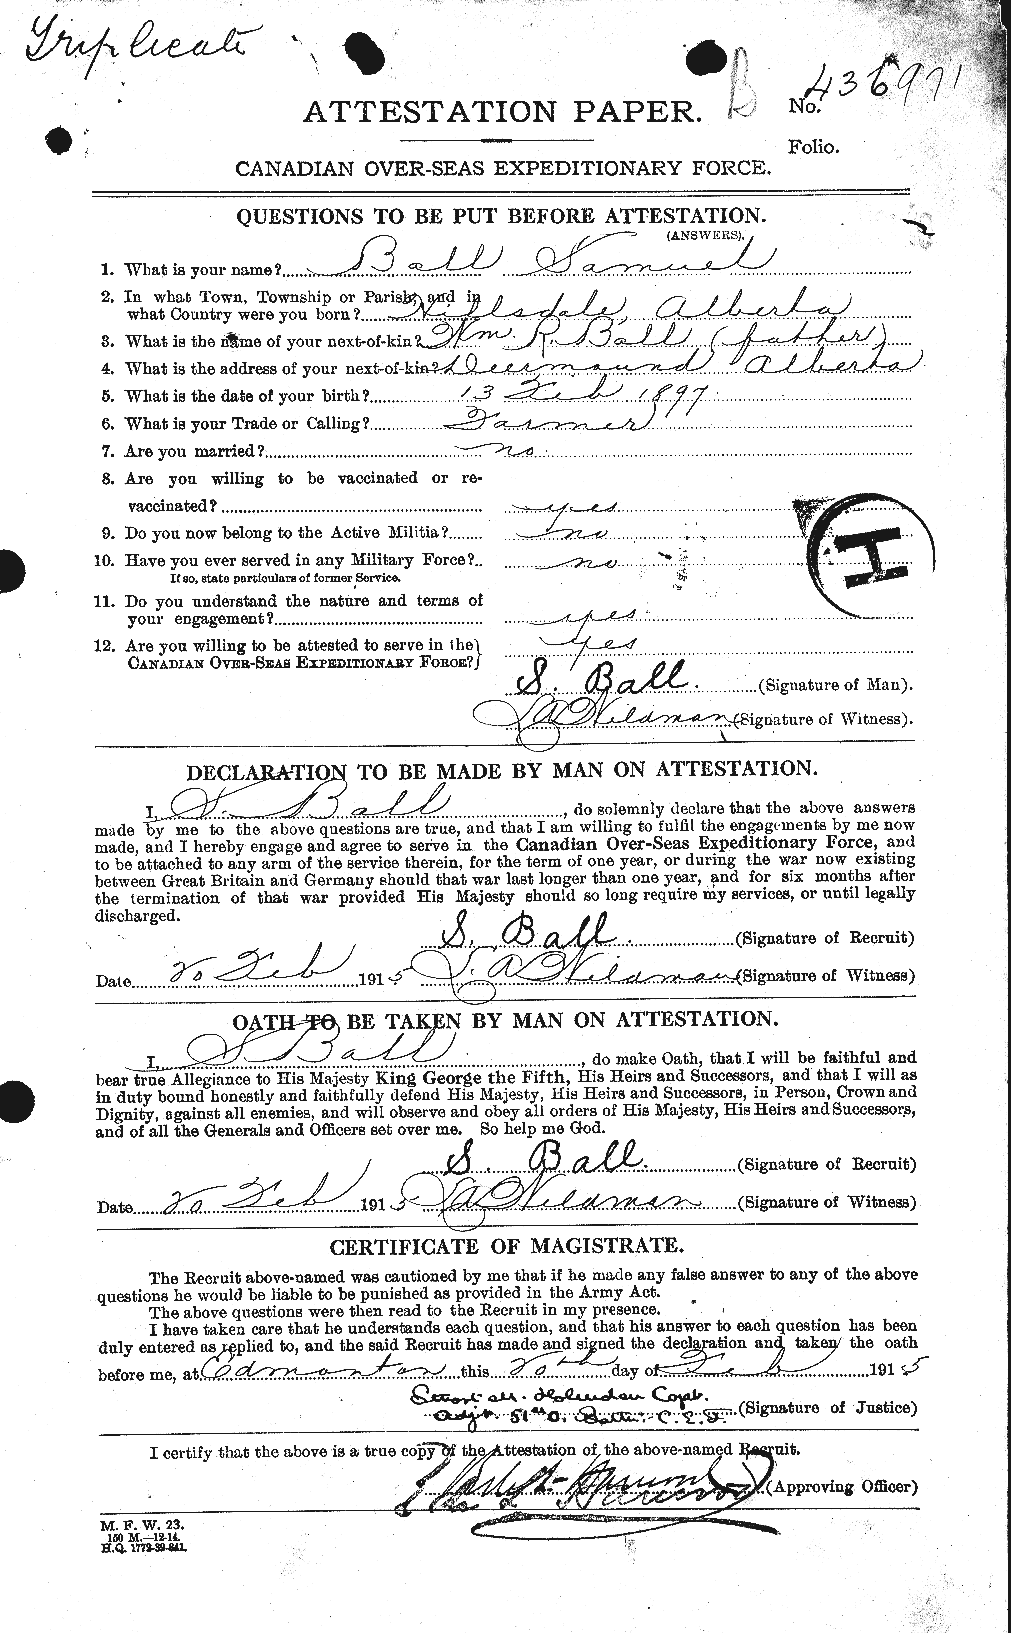 Dossiers du Personnel de la Première Guerre mondiale - CEC 225611a